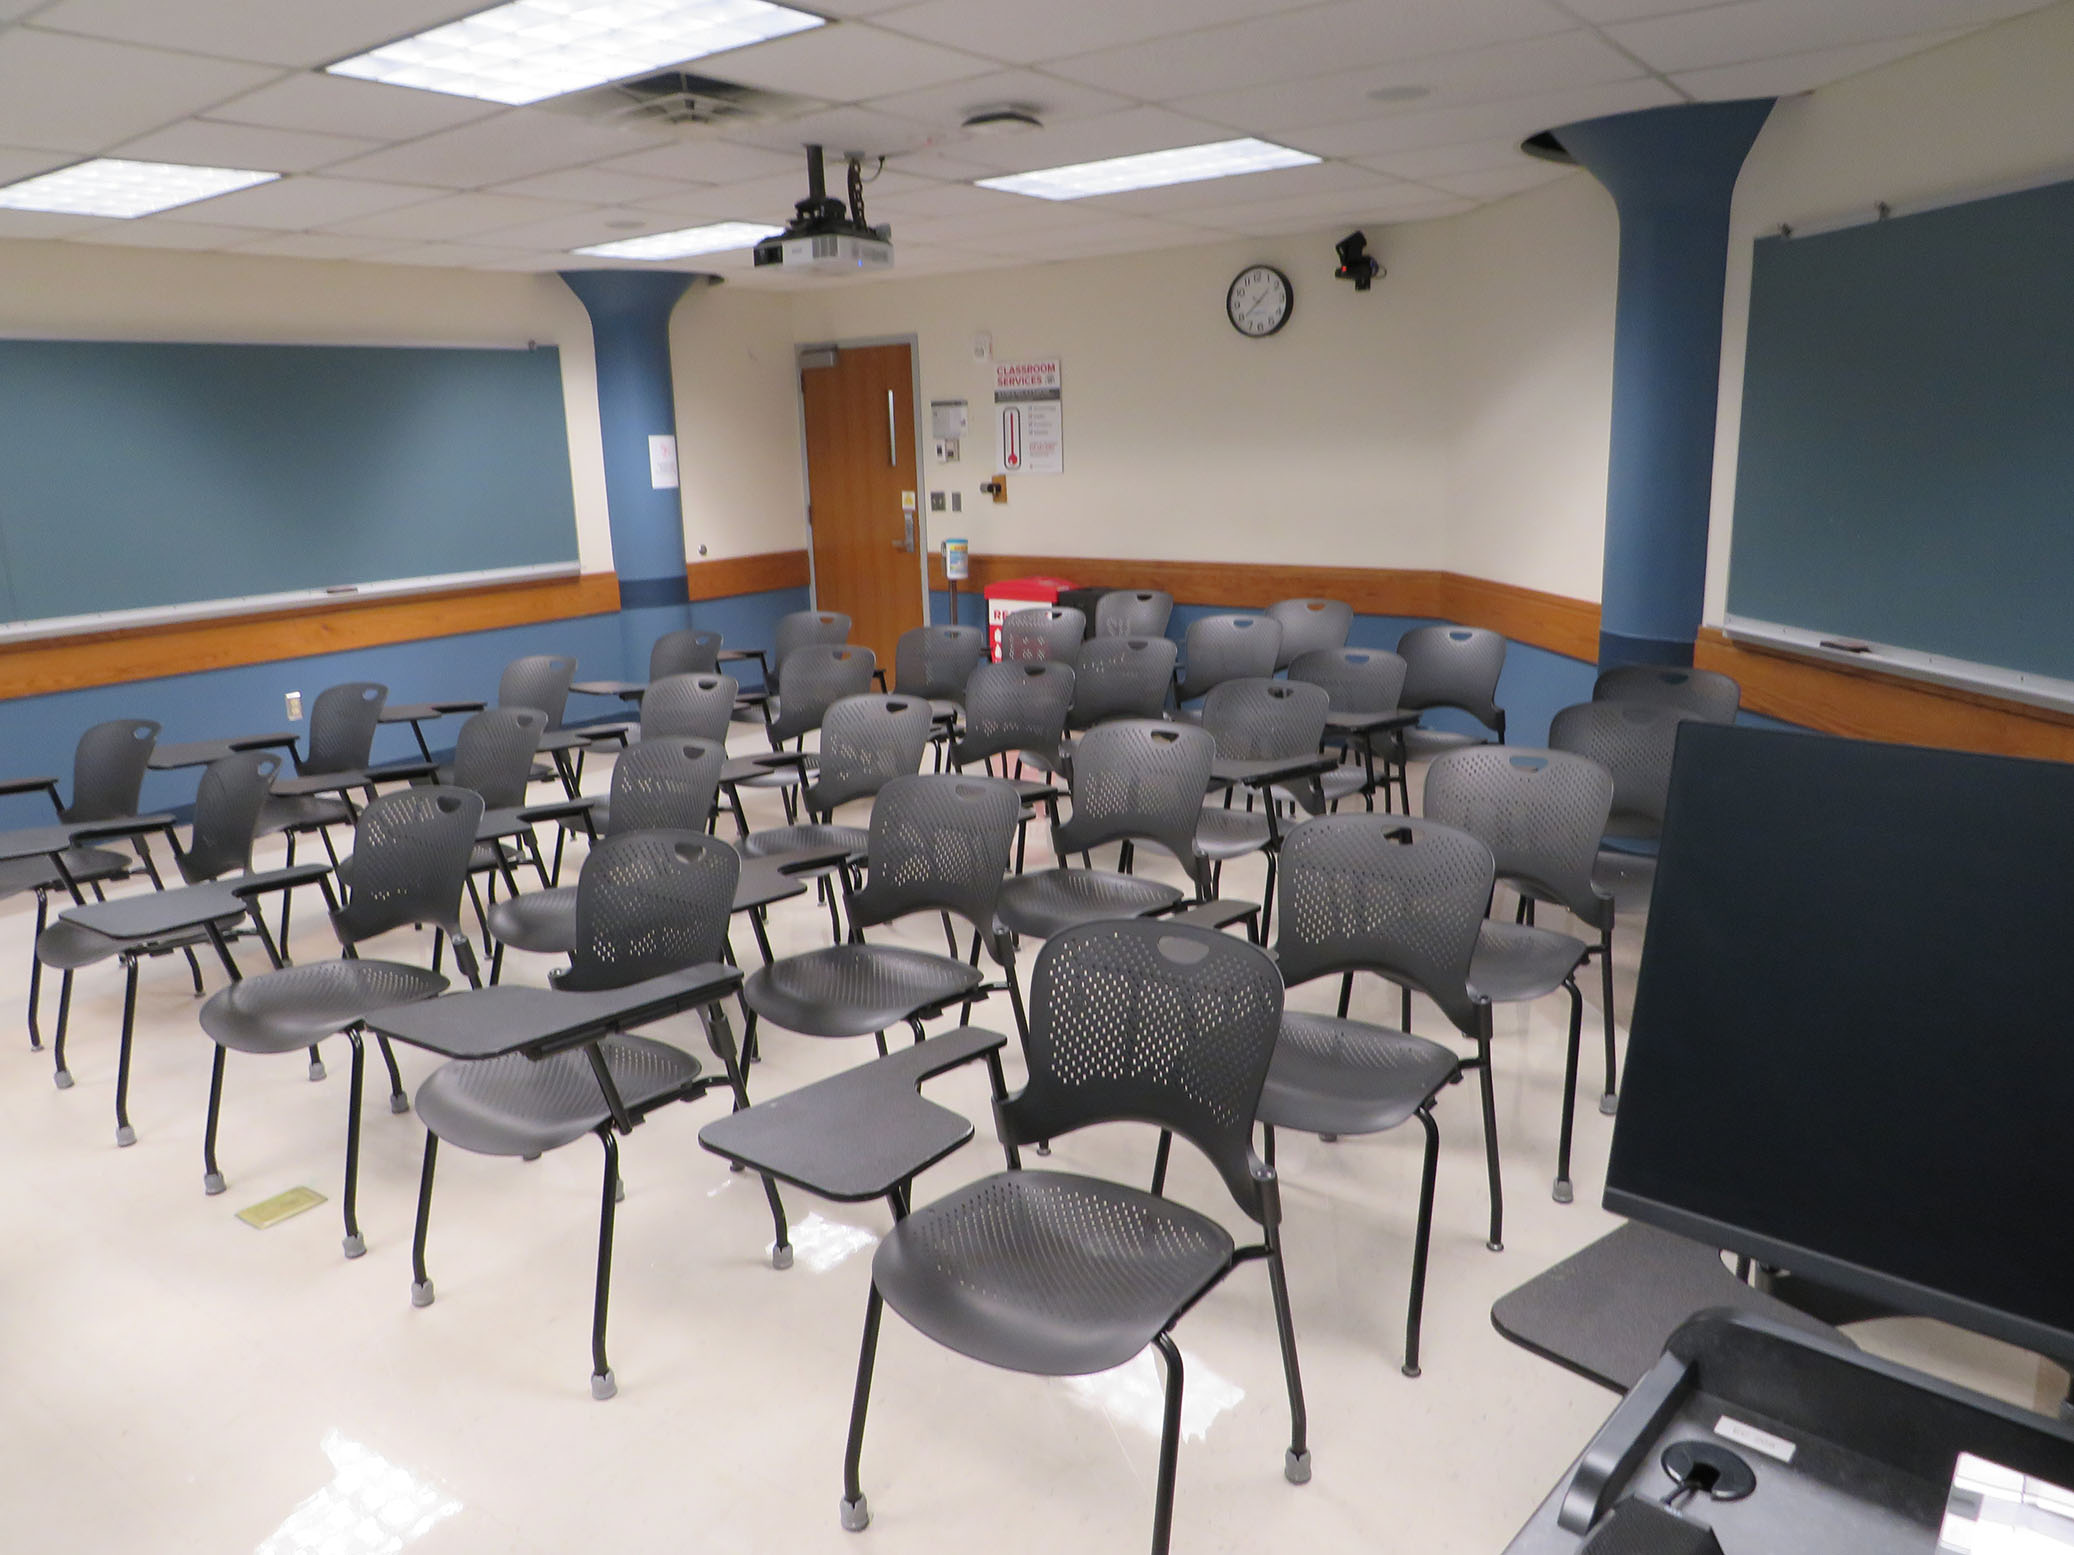 Enarson Classroom Building Room 209